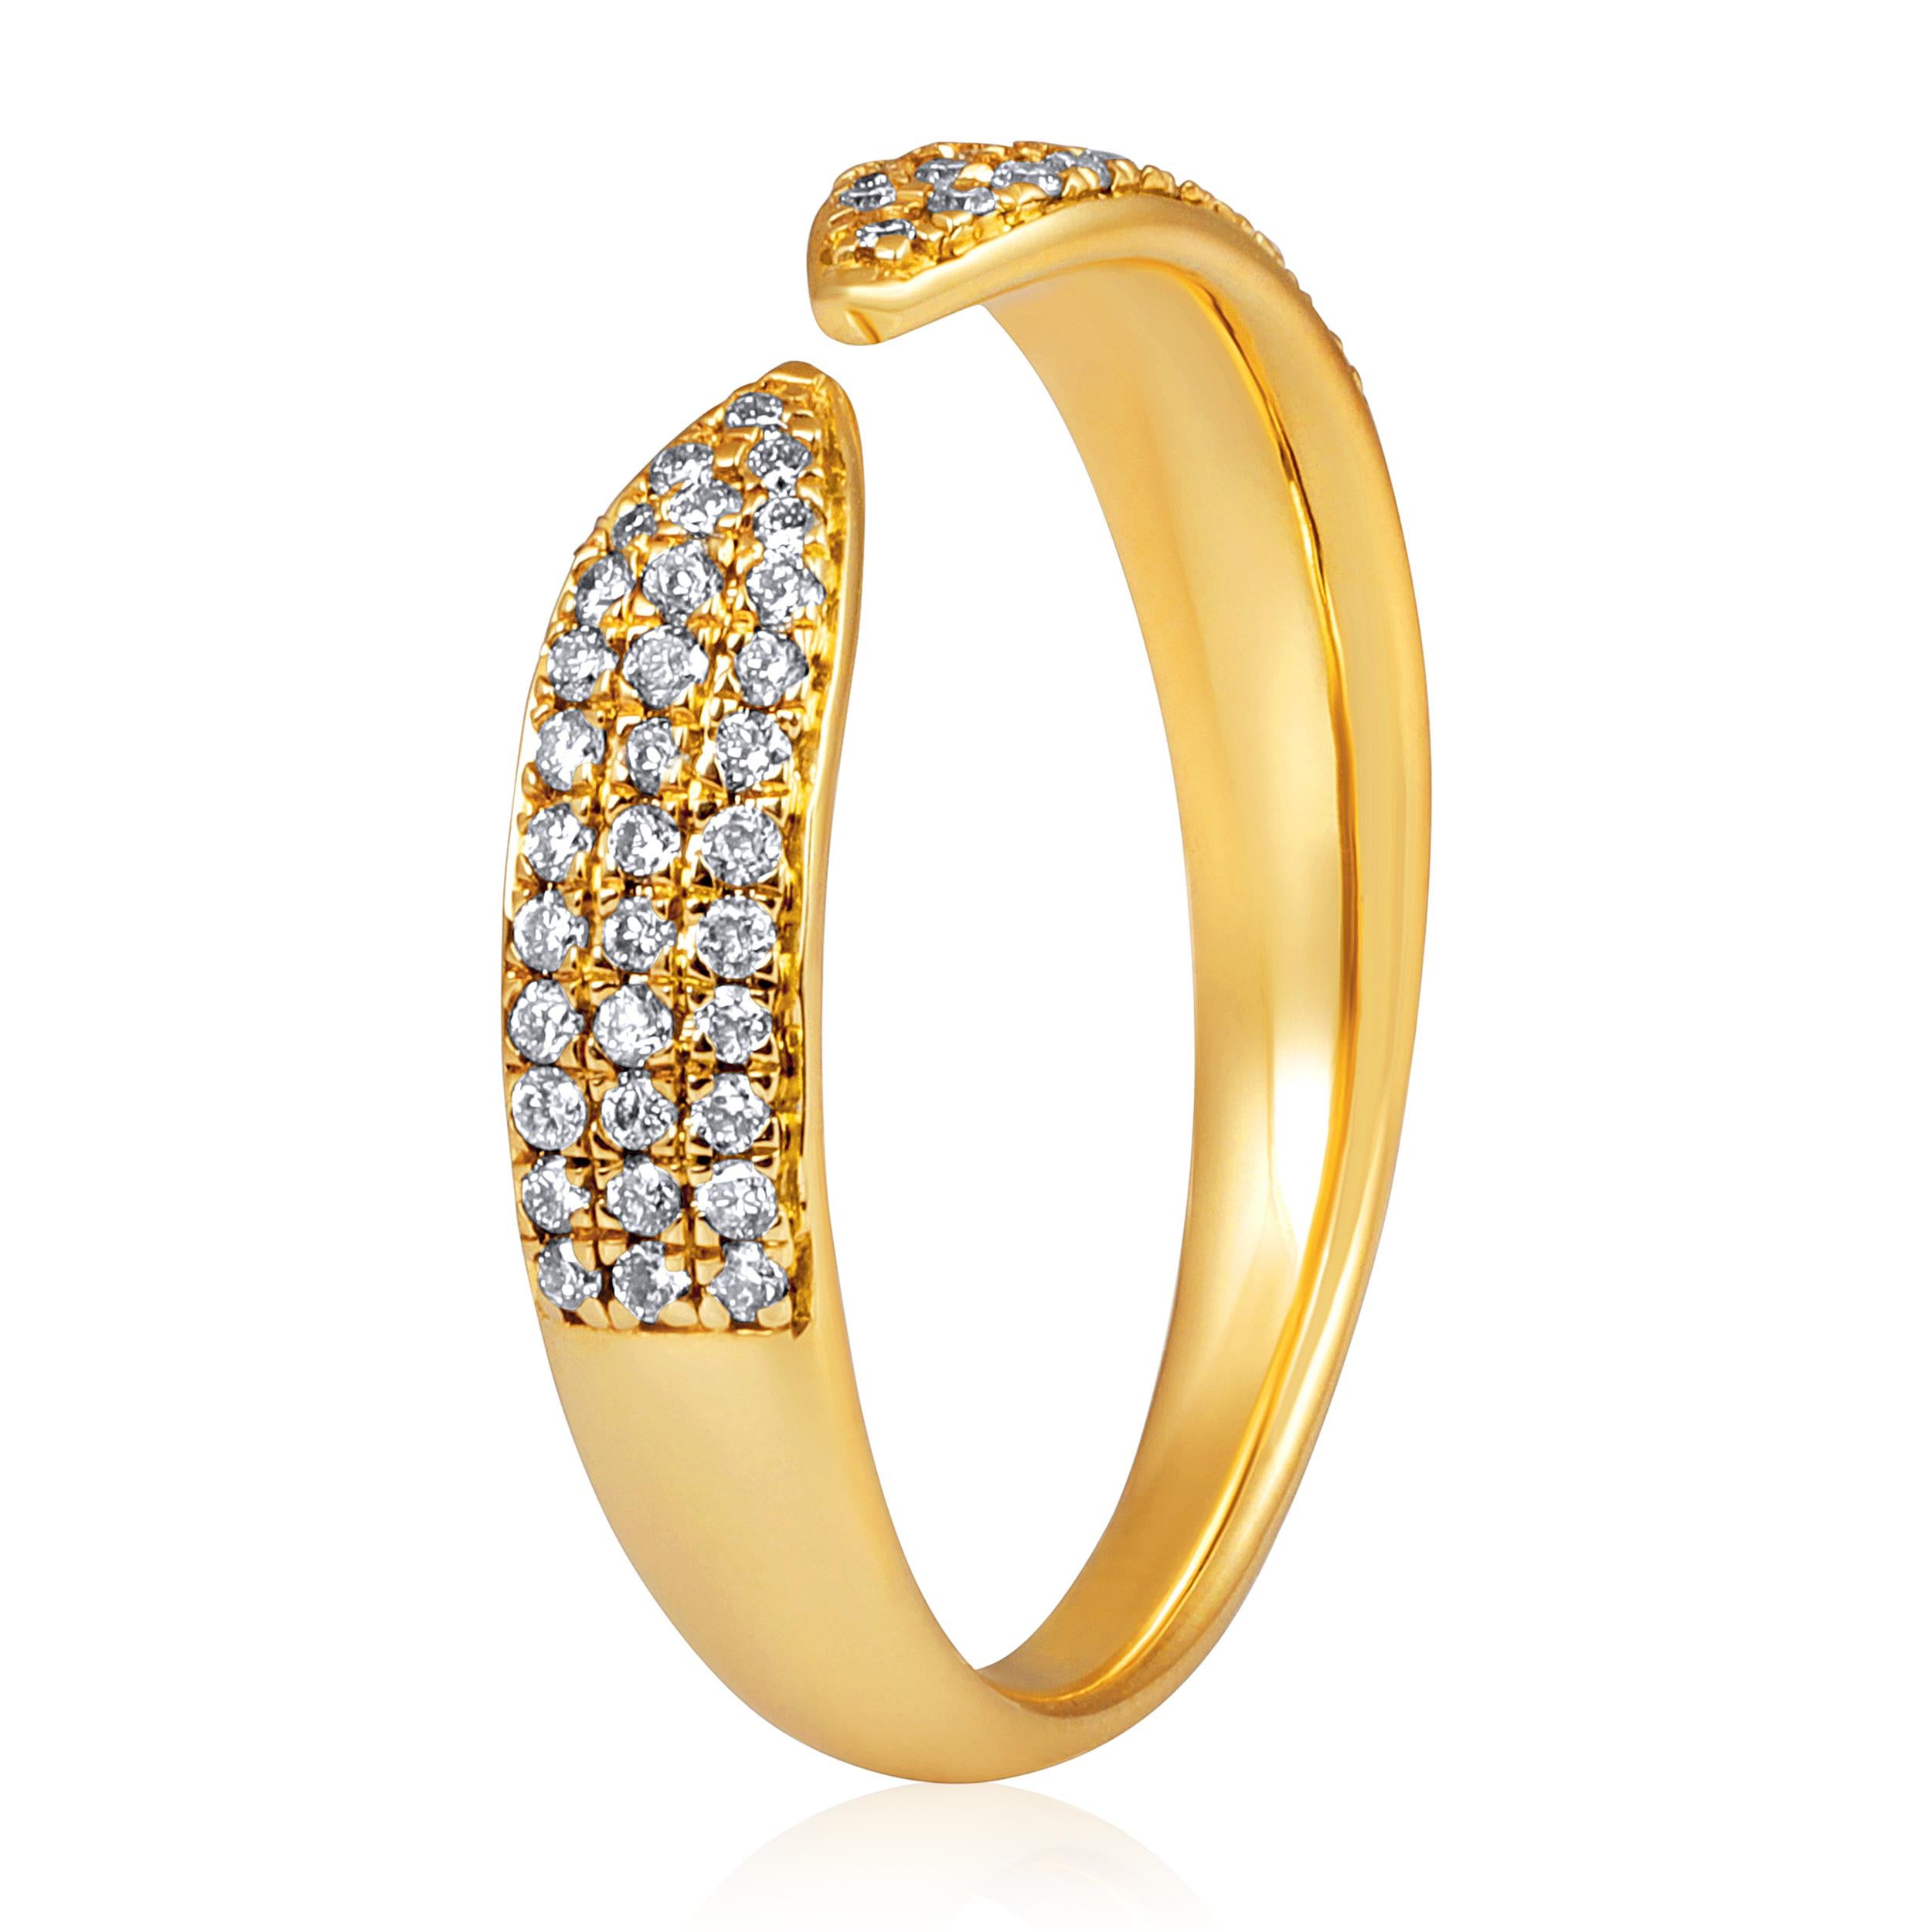 Fabriquée en or jaune 14 carats de 2,73 grammes, la bague contient 66 diamants ronds naturels d'un total de 0,25 carat de couleur E-F et de pureté SI.

UNE ESSENCE CONTEMPORAINE ET INTEMPORELLE : Fabriqué en 14 carats/18 carats avec 100% de diamant